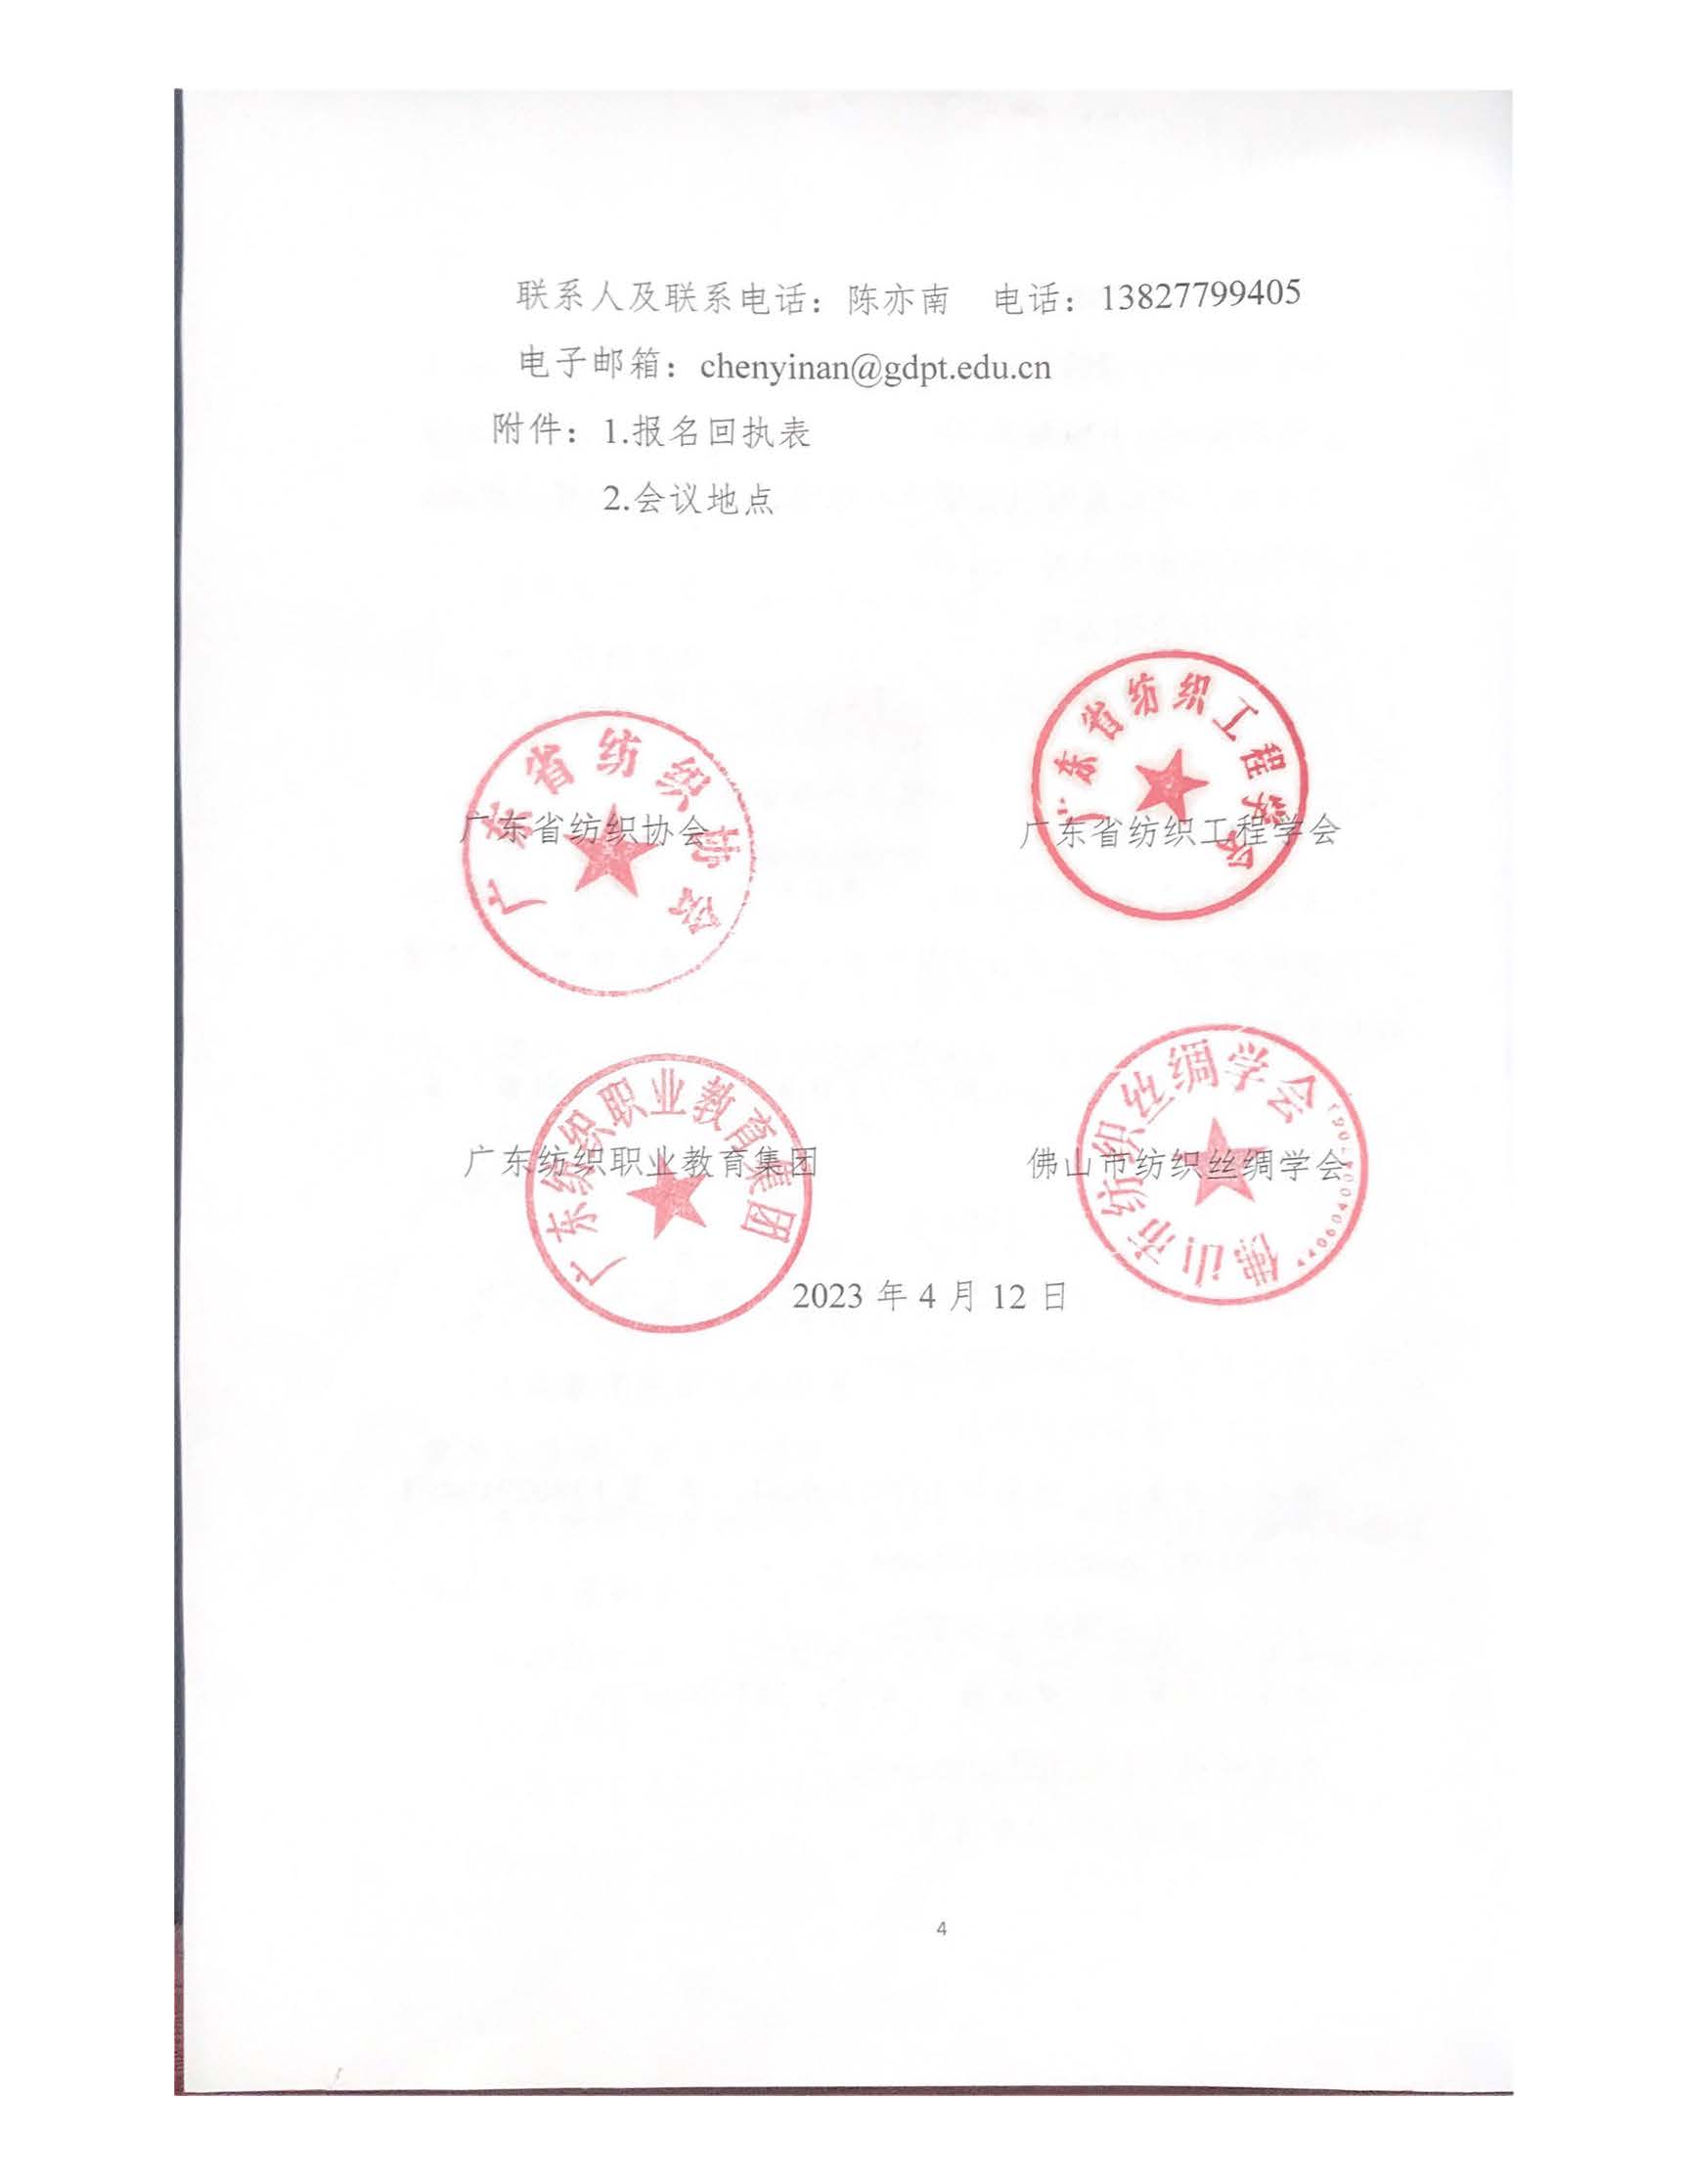 2023广东省功能性纺织品技术创新论坛通知_页面_4.jpg